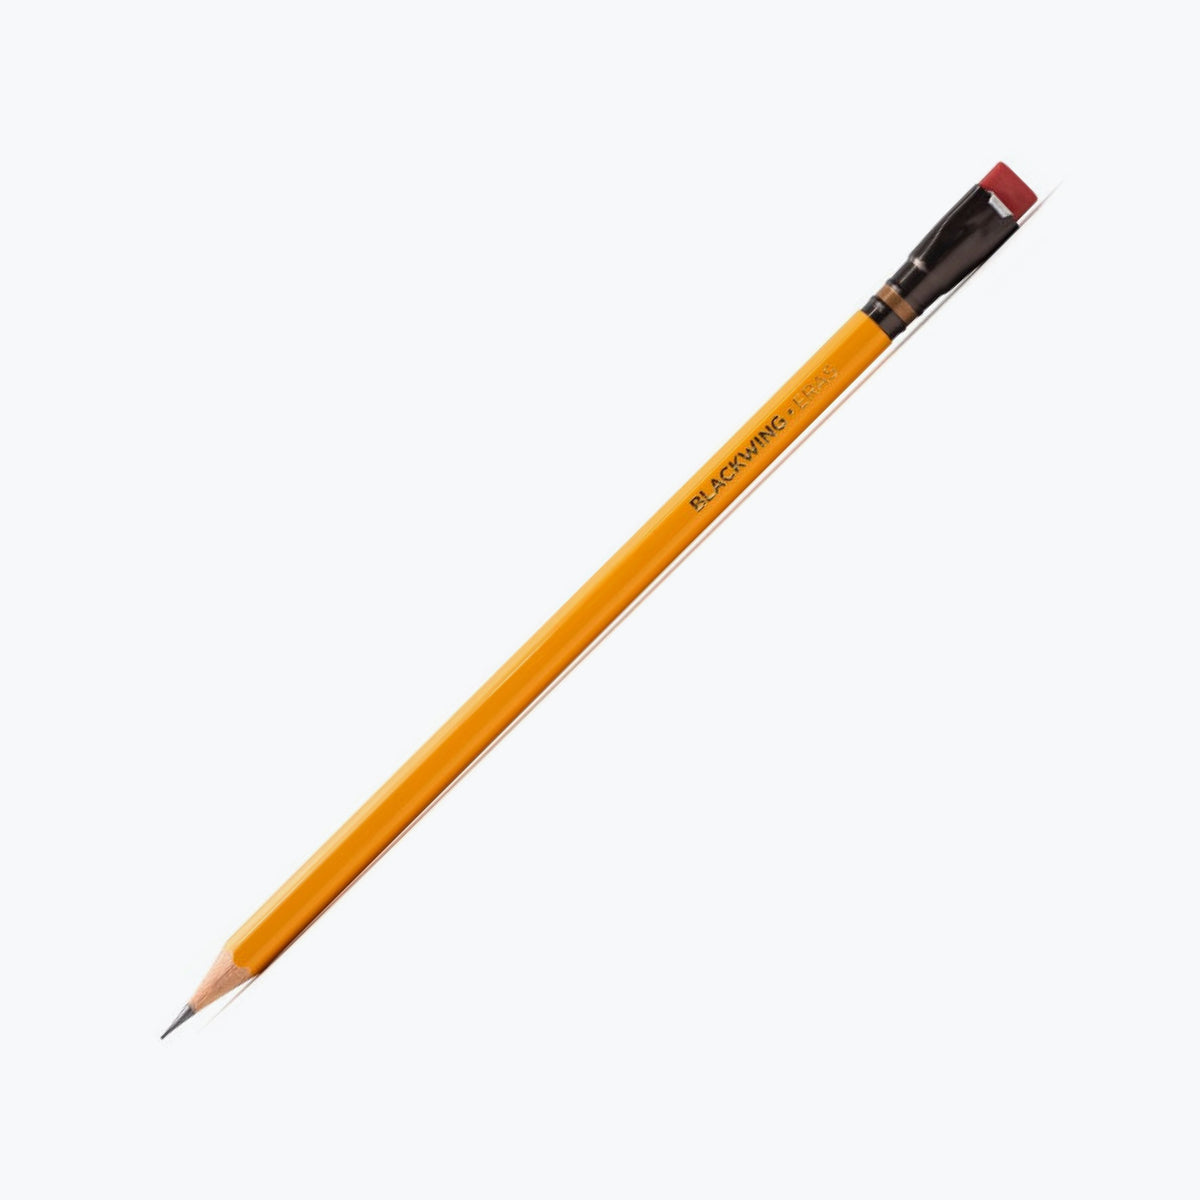 Palomino Blackwing - Pencil - Blackwing Eras 2023 - Pack of 2